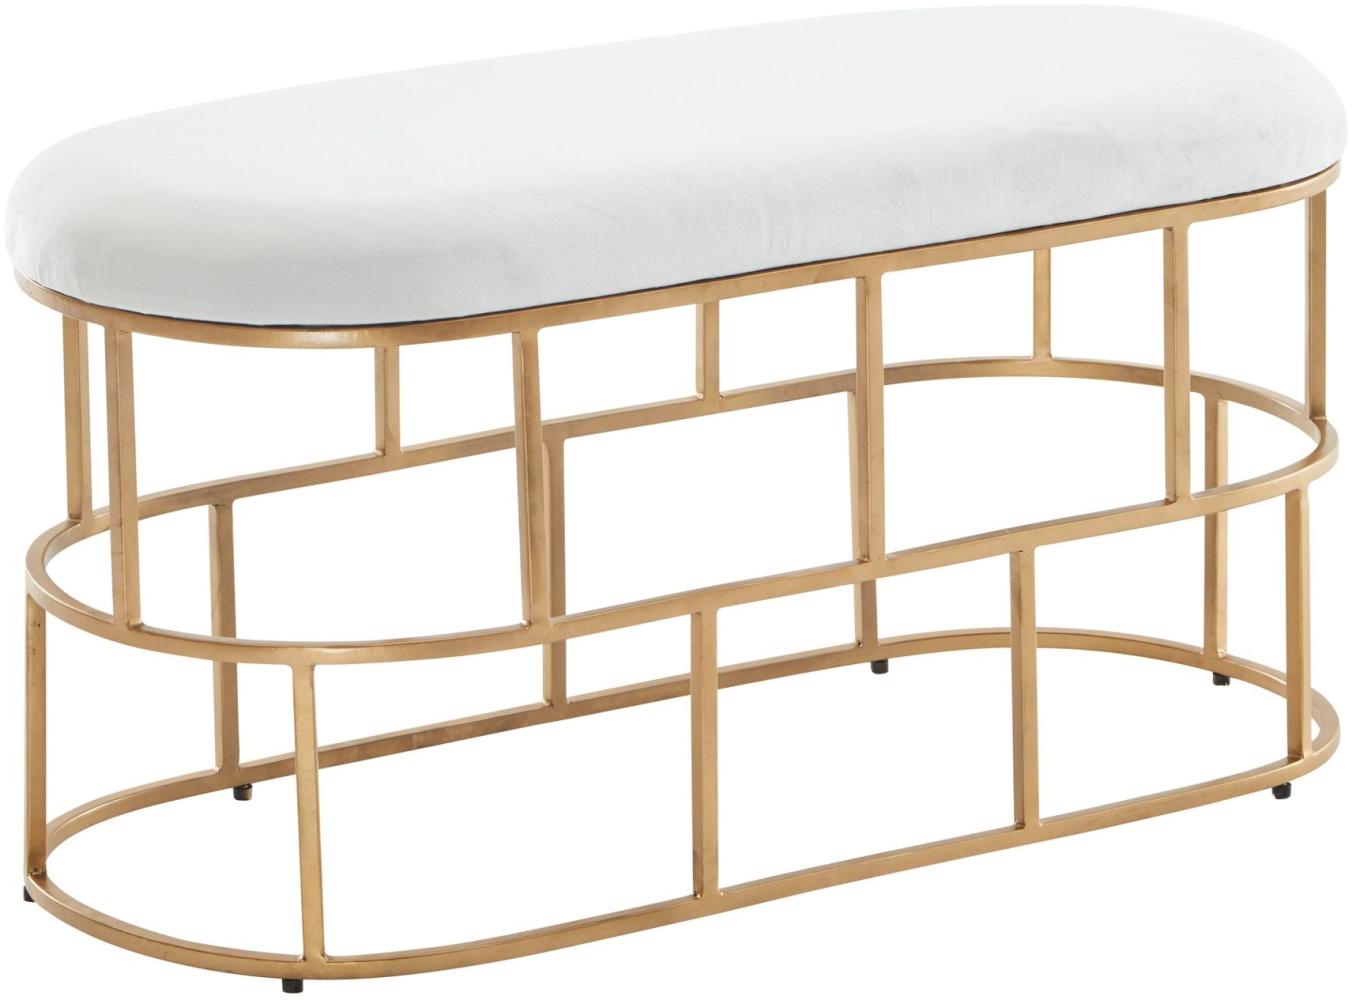 KADIMA DESIGN Stilvolle Samt-Sitzbank in Weiß & Gold - Zeitgemäßes Ambiente, Handgefertigtes Unikat für höchsten Sitzkomfort und einfache Reinigung. Bild 1